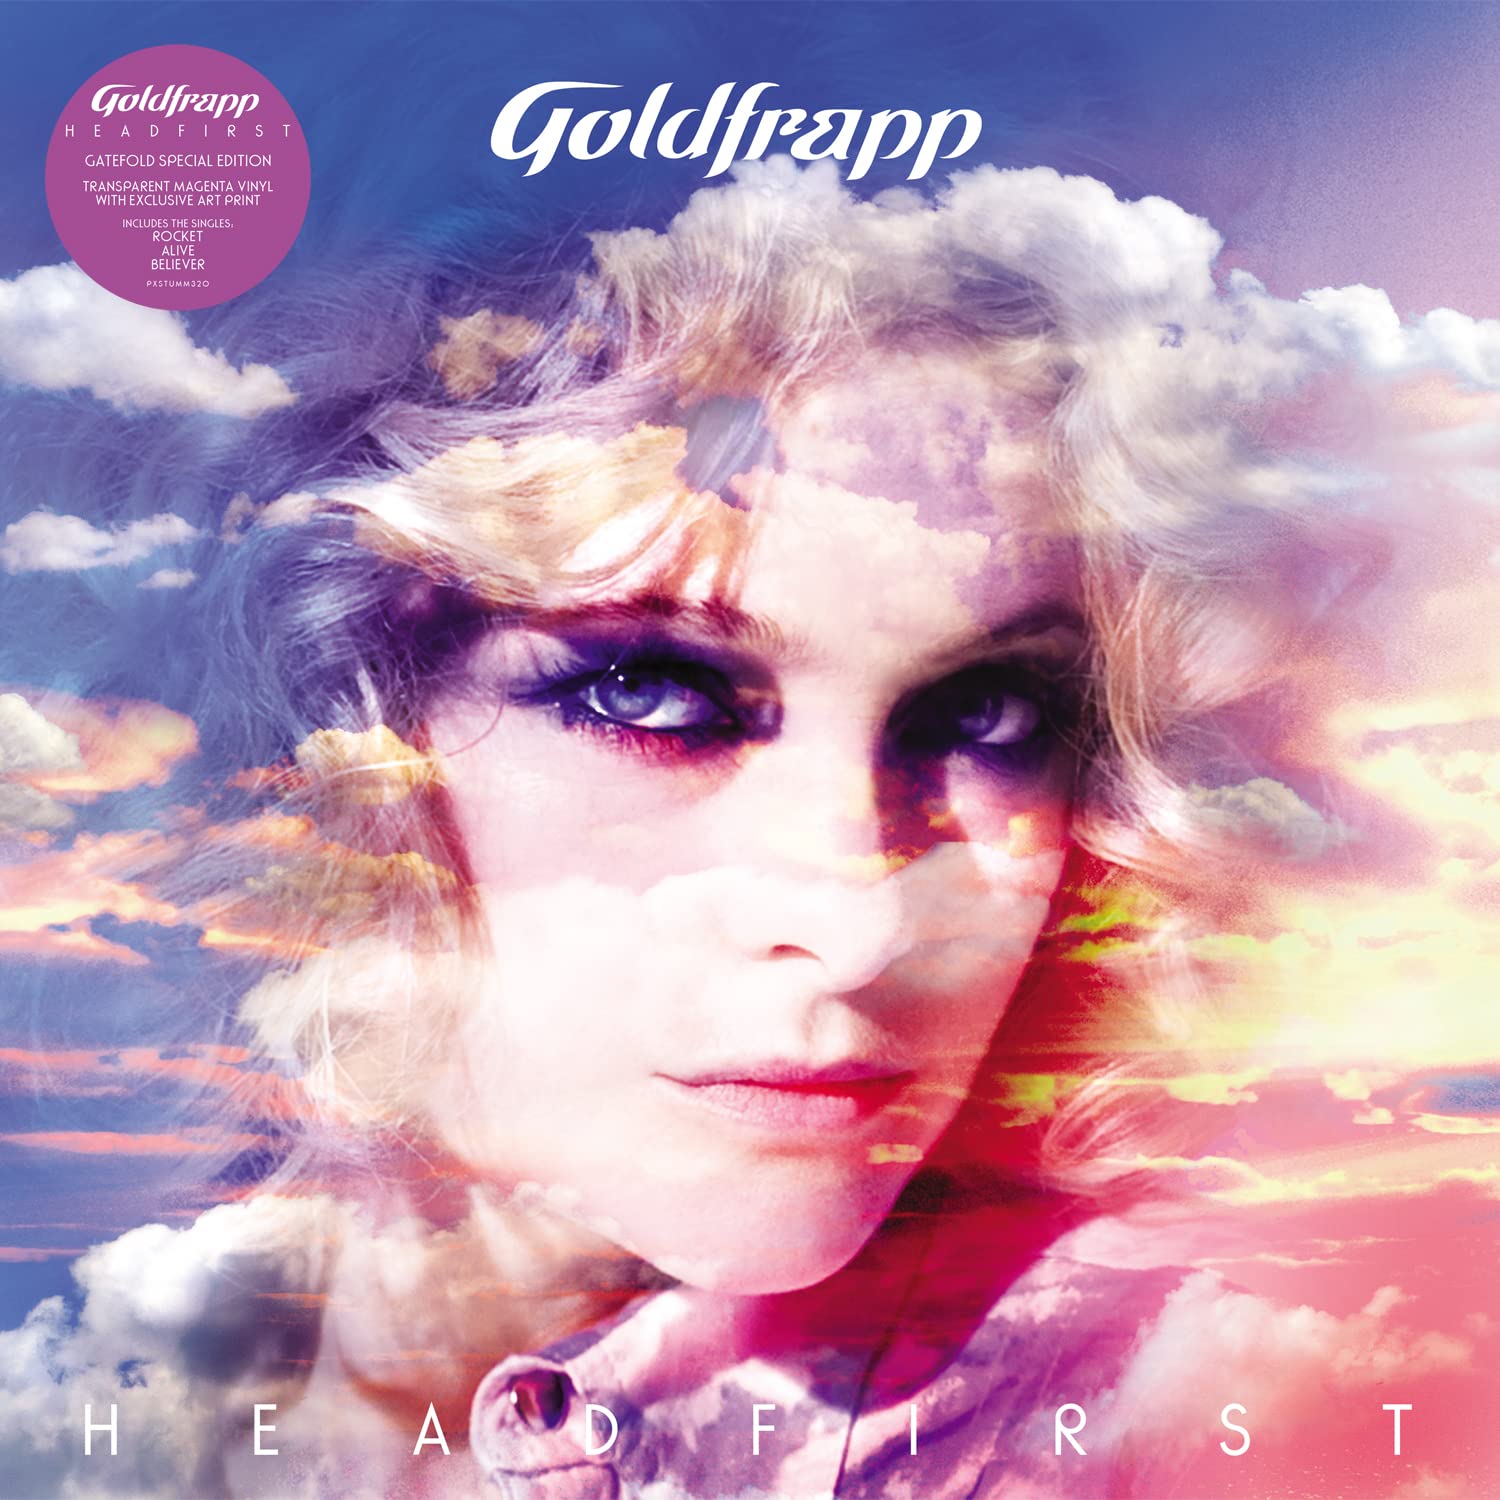 Goldfrapp Head First Limited Magenta Vinyl LP